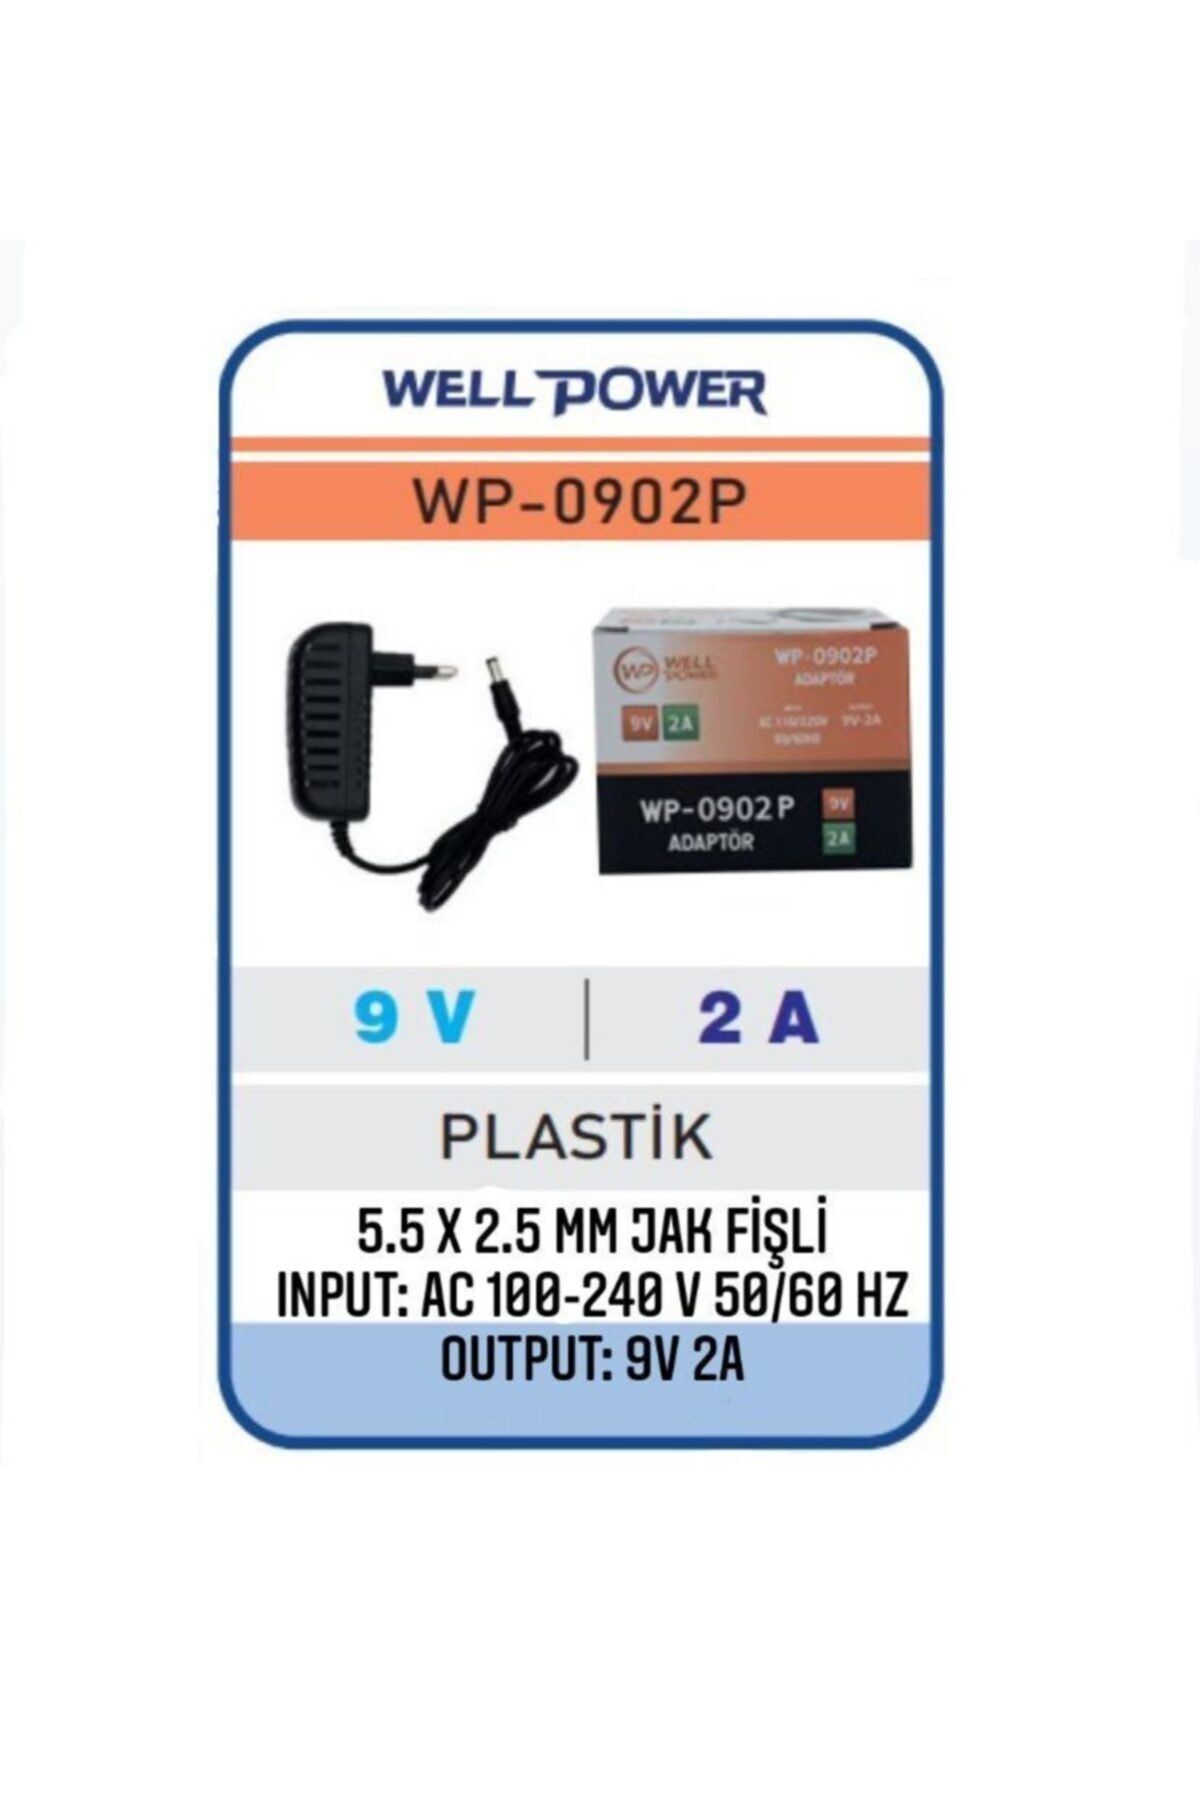 WELL POWER 9v 2a Adaptör 9 Volt 2 Amper 5.5 X 2.5 Mm Jak Fişli Plastik Kasa Wellpower Wp-0902p